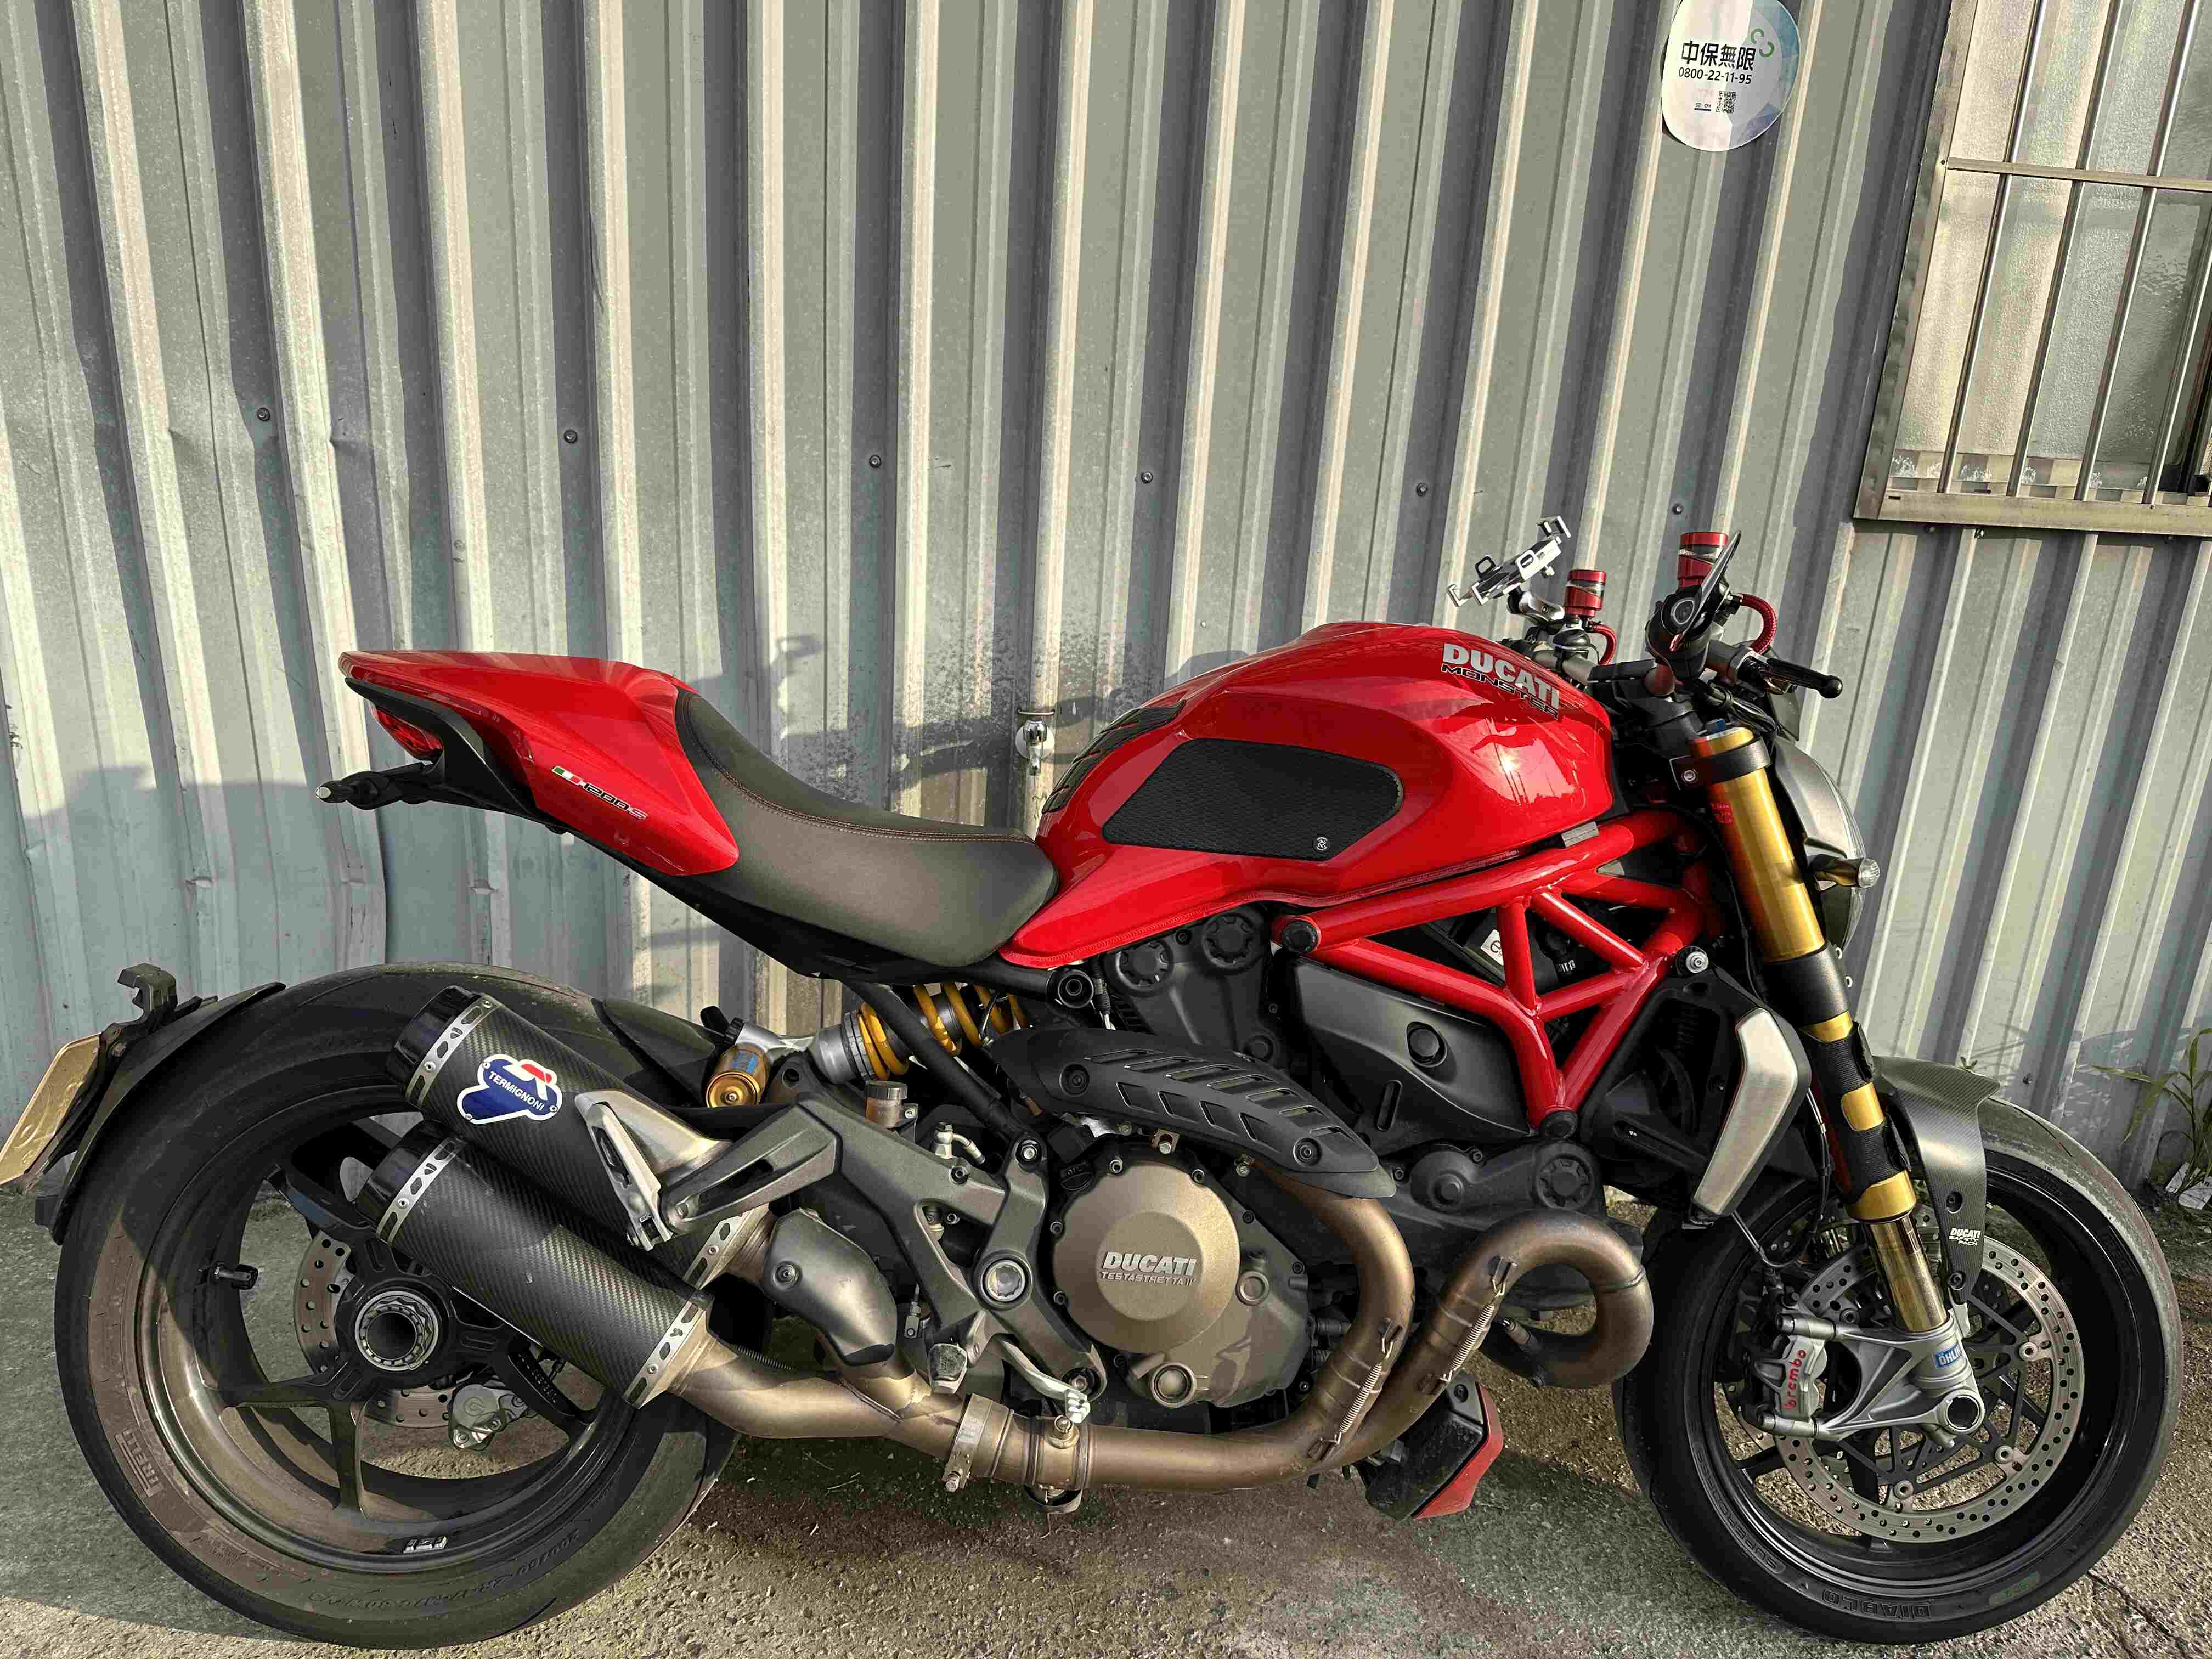 【湯姆重機】DUCATI MONSTER 1200S - 「Webike-摩托車市」 湯姆重機 2015 Ducati Monster 1200S 公司車